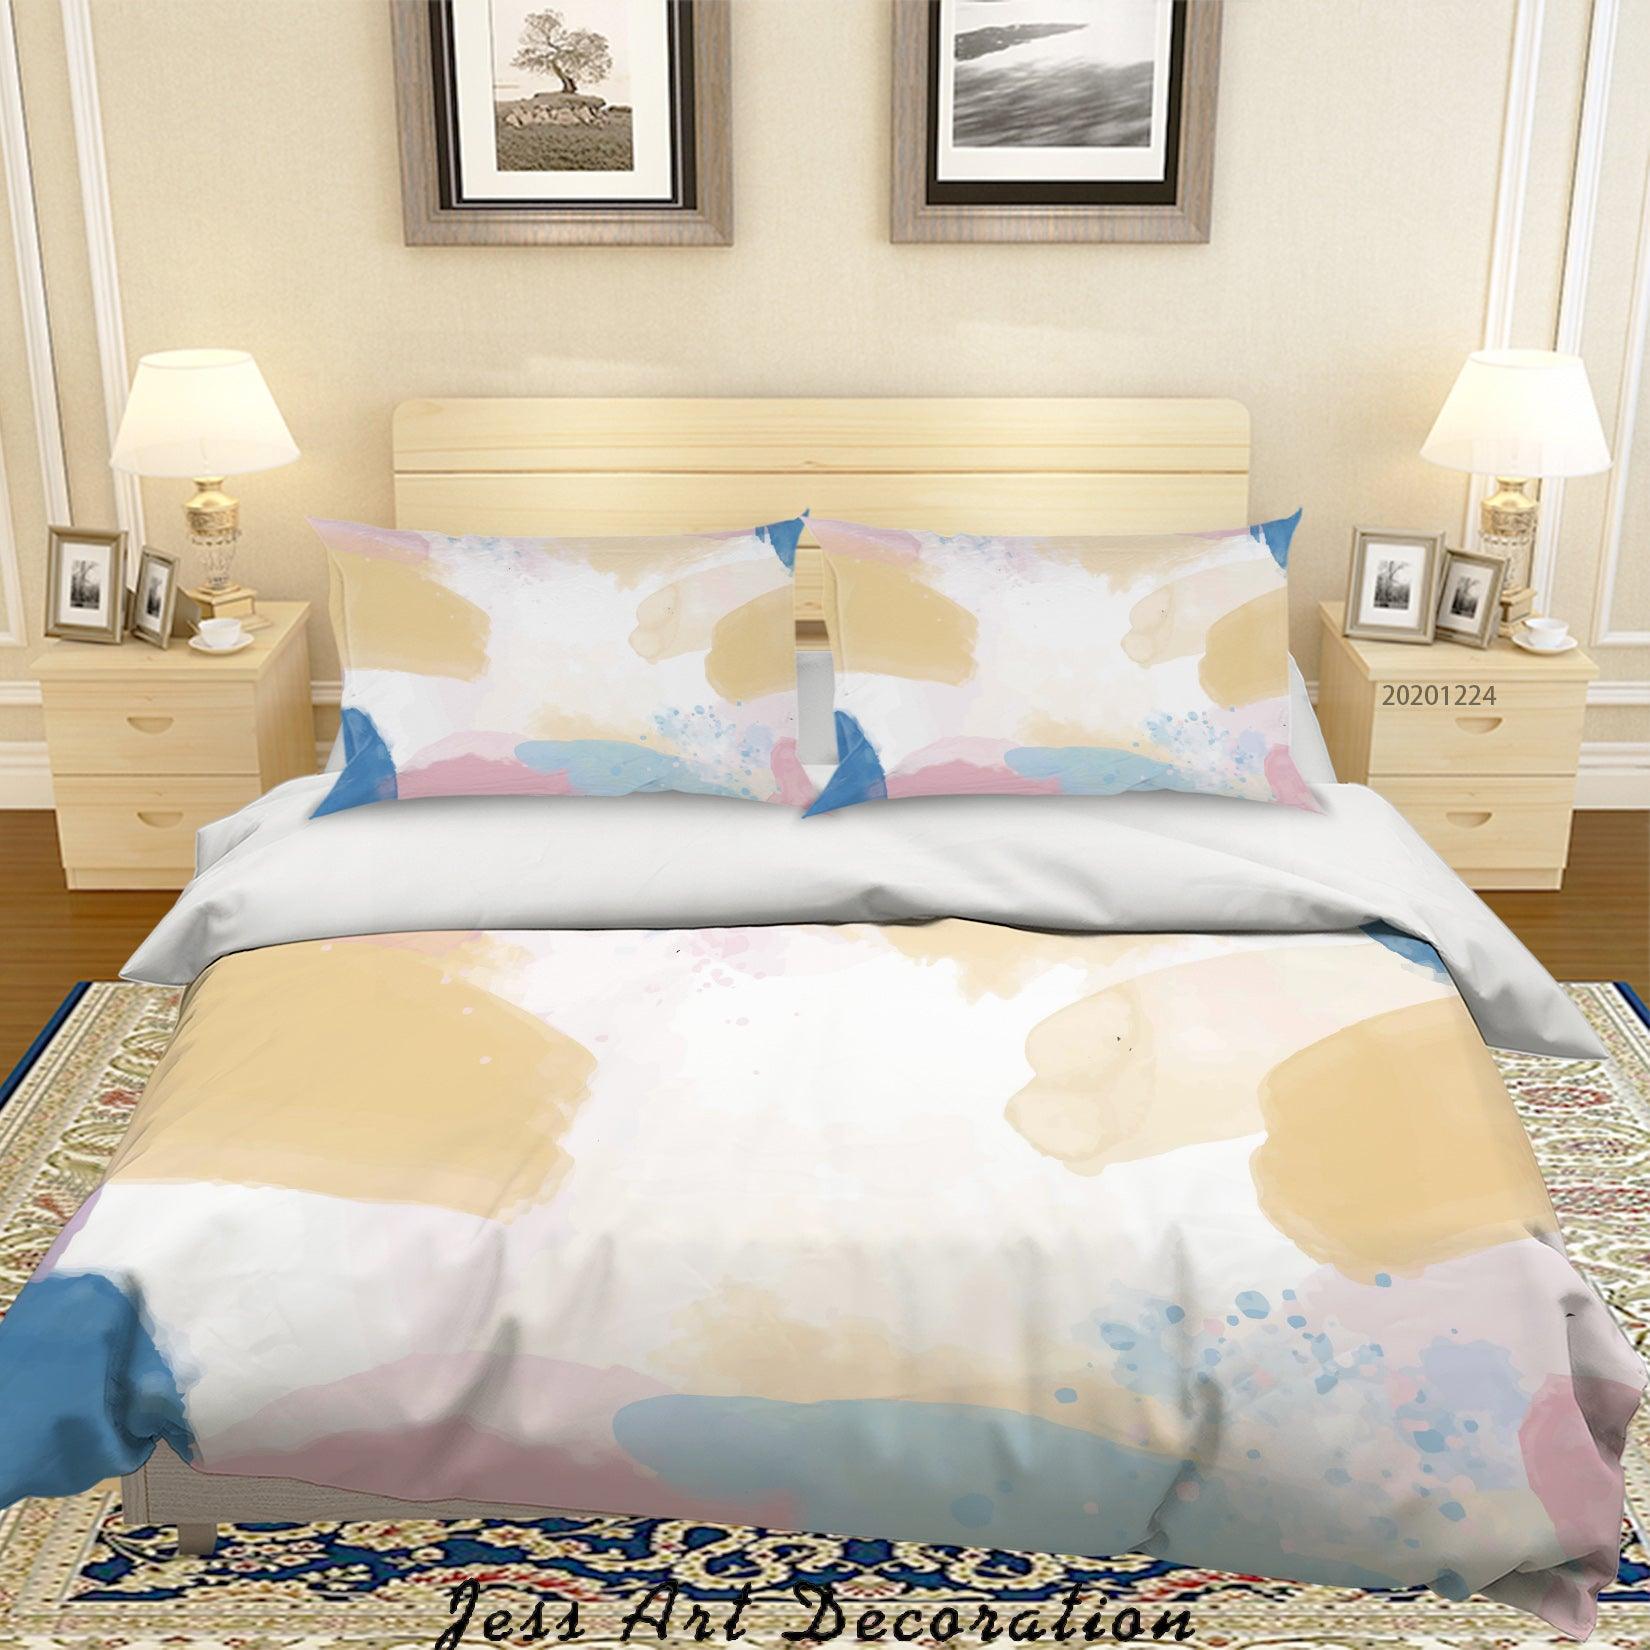 3D Watercolor Geometric Pattern Quilt Cover Set Bedding Set Duvet Cover Pillowcases 166 LQH- Jess Art Decoration